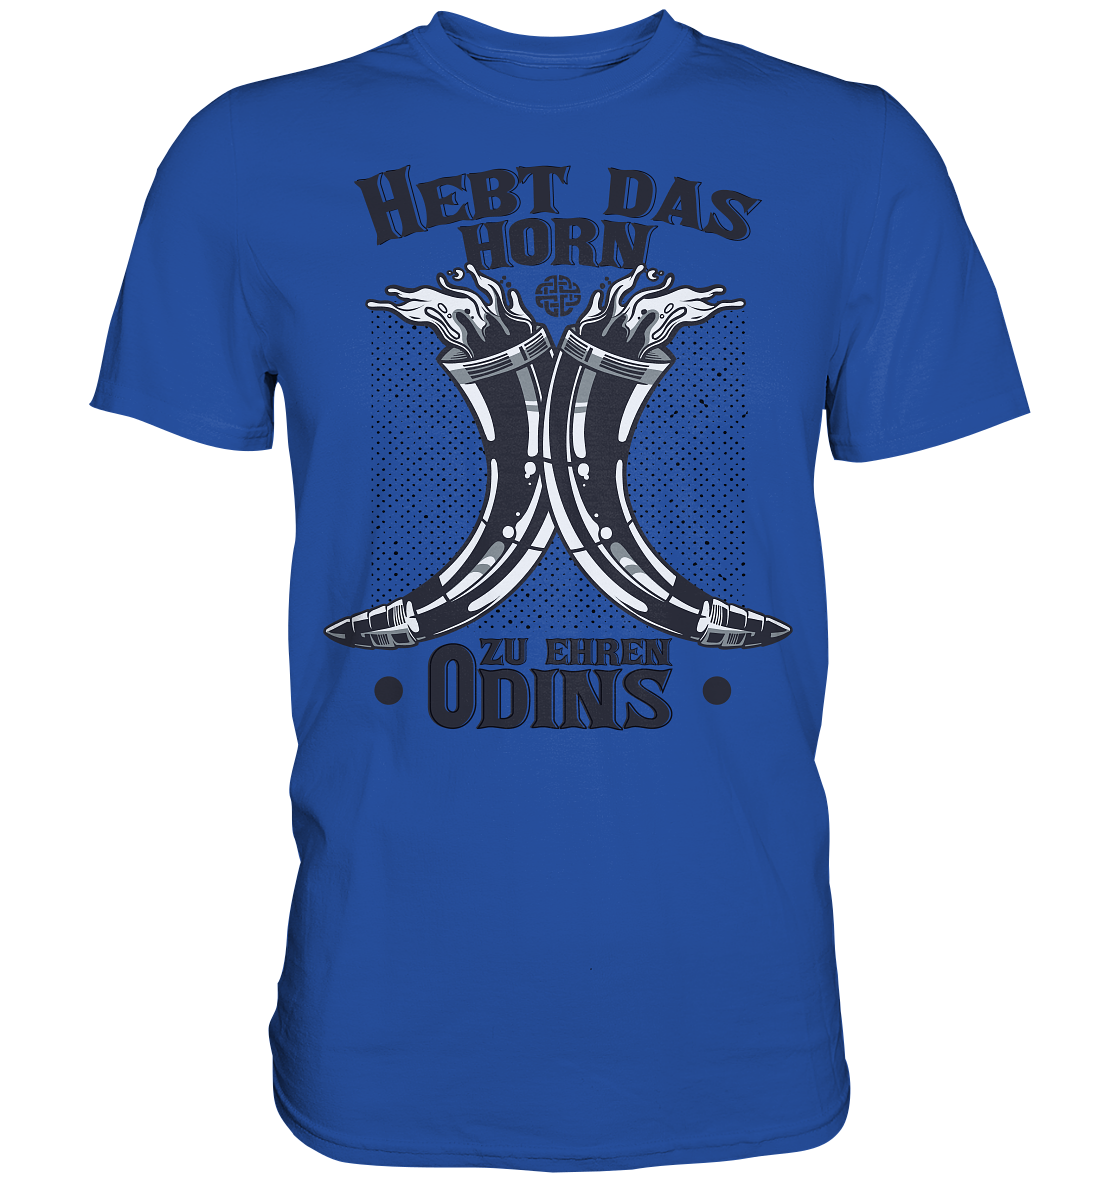 Hebt das Horn zu Ehren Odins - Classic Shirt